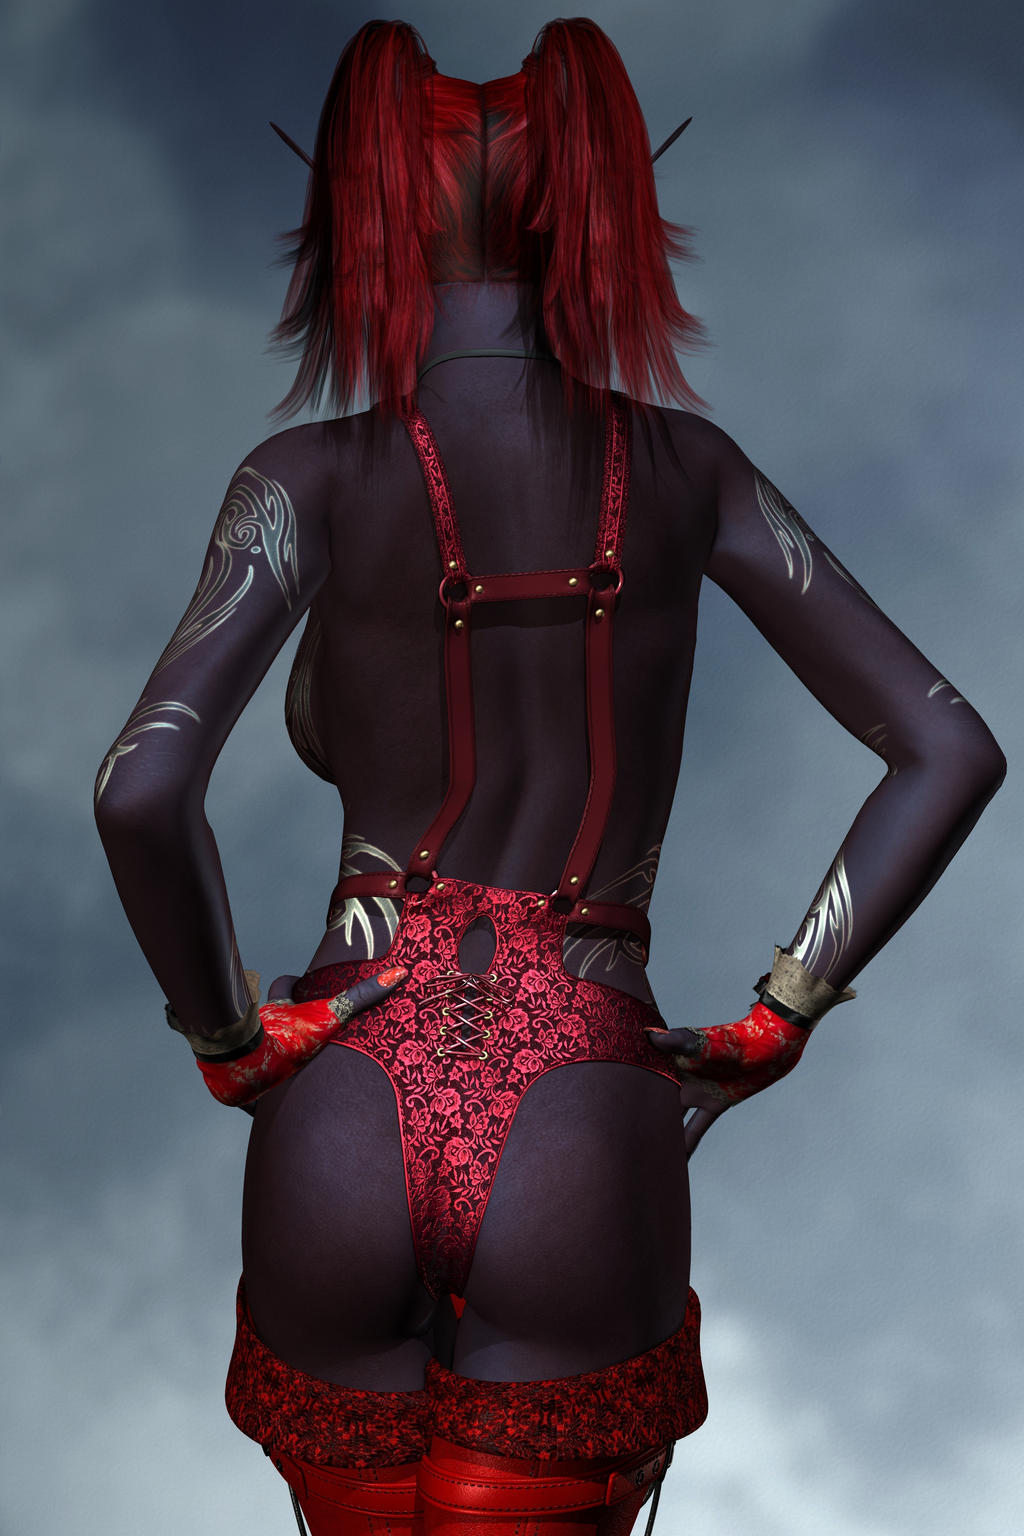 Sexy Fantasy Dark Devil Vamp Elfen 001b By Evinessa On Deviantart